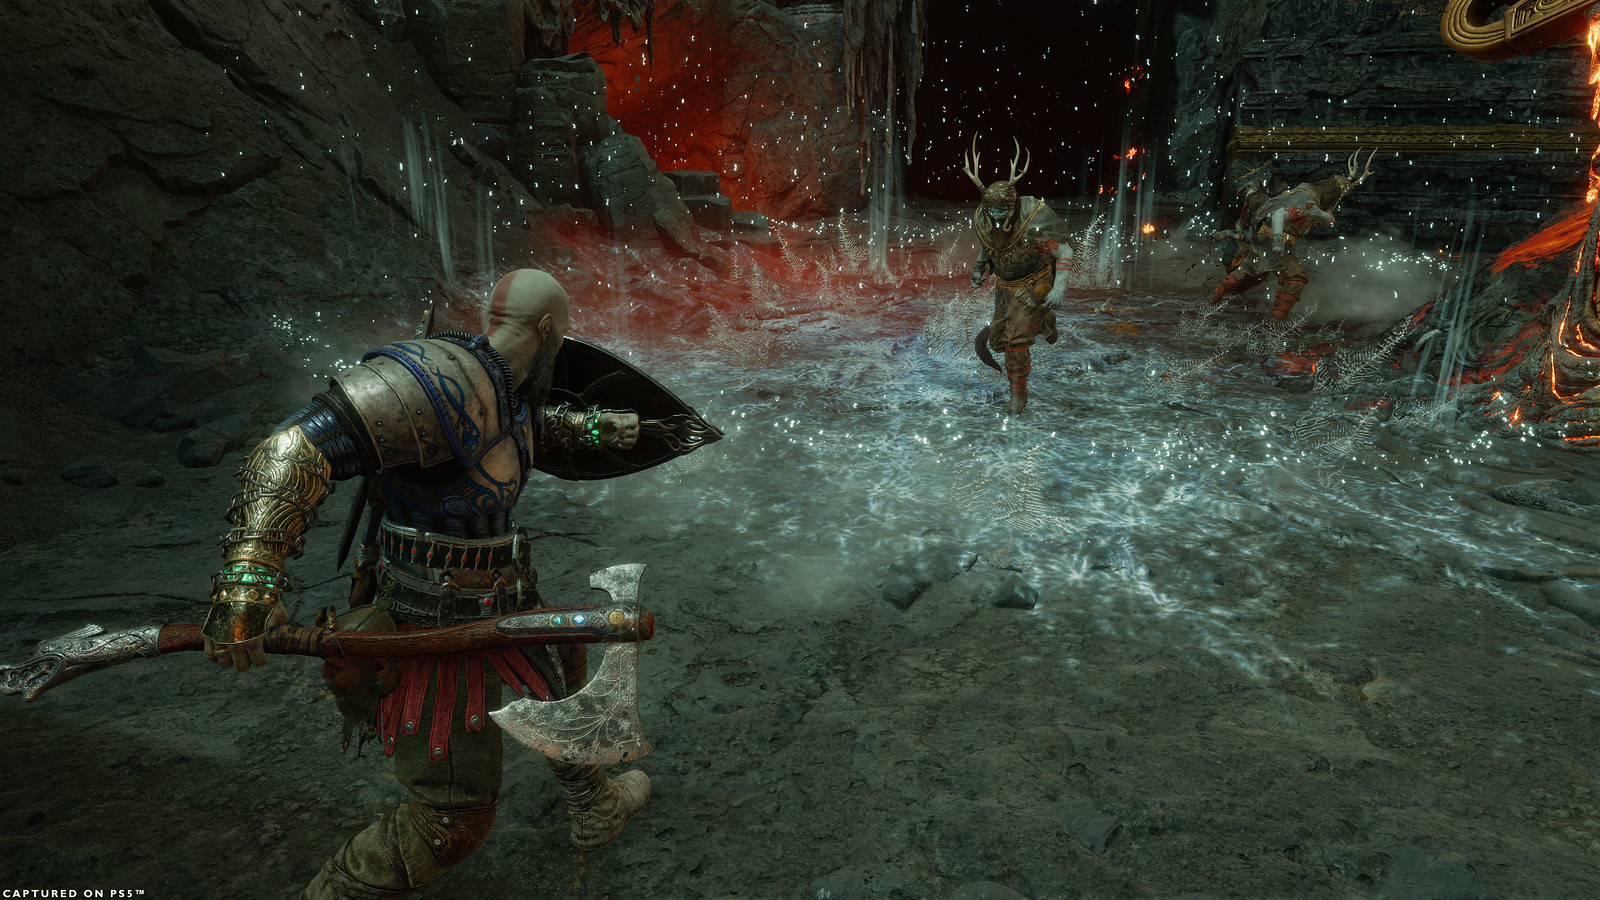 Kratos affronte des Hel-Raiders dans l'Arène de Muspelheim. Le sol est couvert d'un large effet de froid dû à la capacité d'Invocation Runique de Kratos. Kratos a son bouclier levé contre ses ennemis, tenant la Hache du Léviathan dans sa main droite en se préparant pour leur approche.